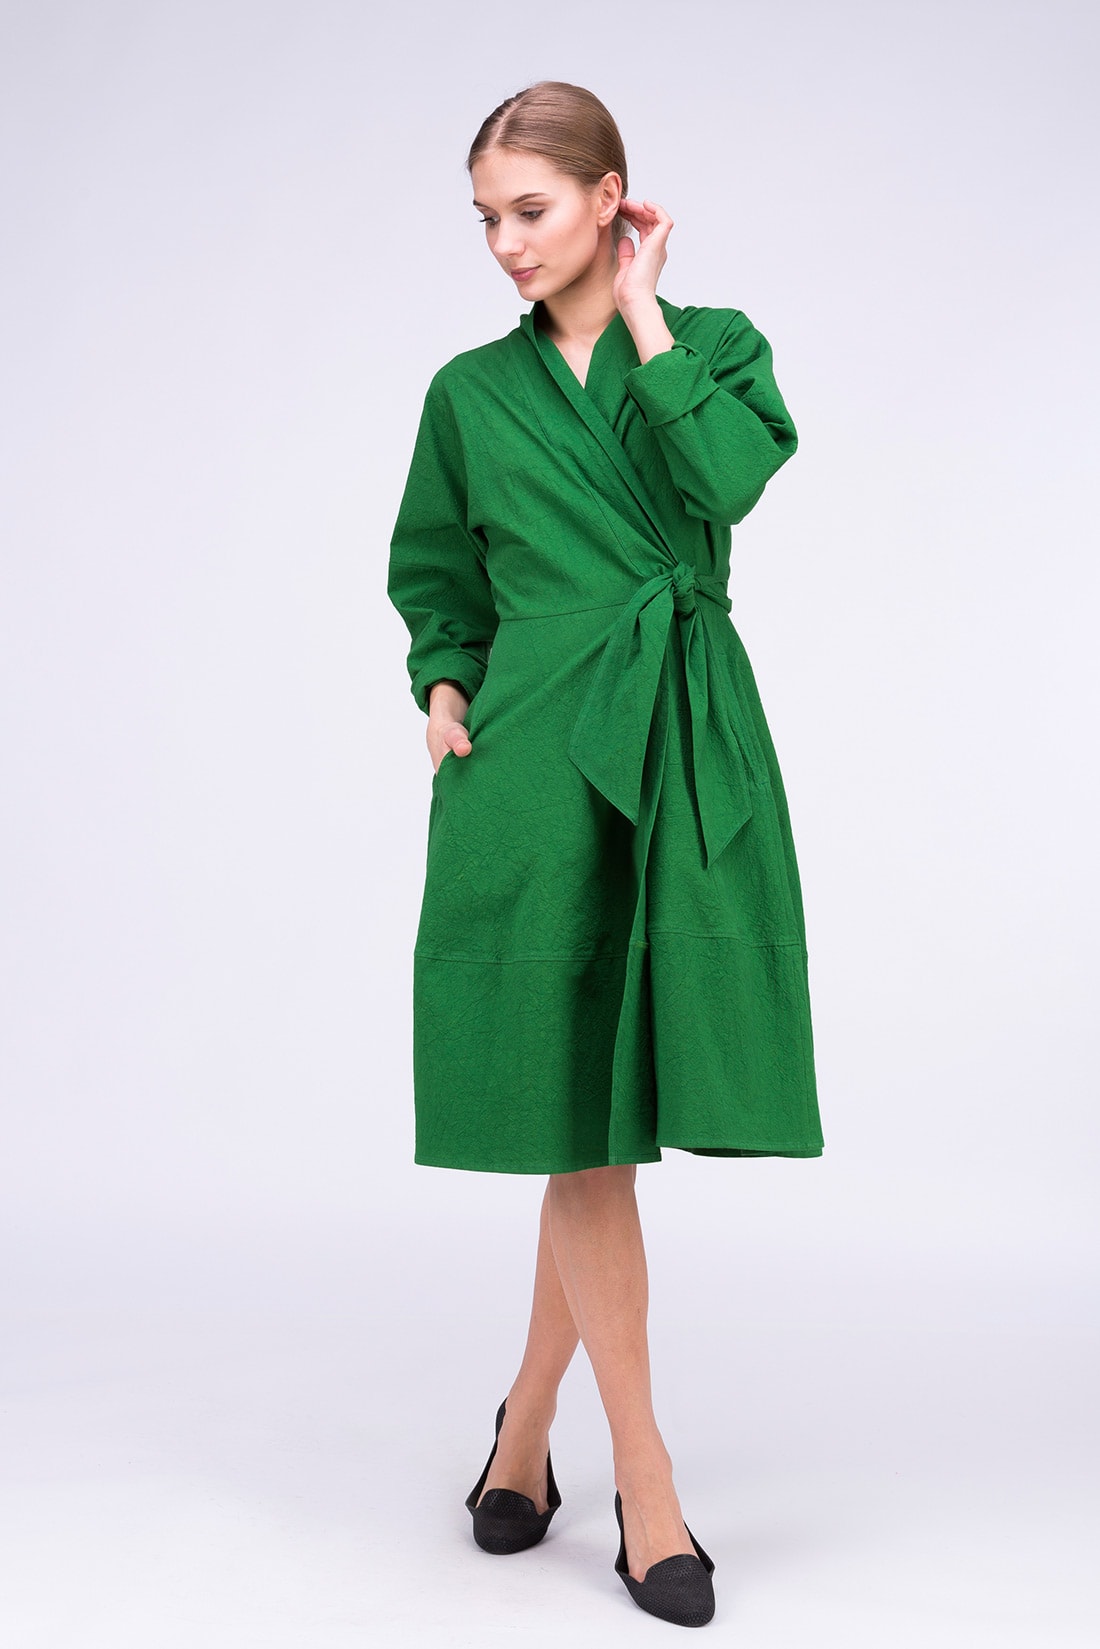 POLARIS Green dress-coat - Boutique ASKA